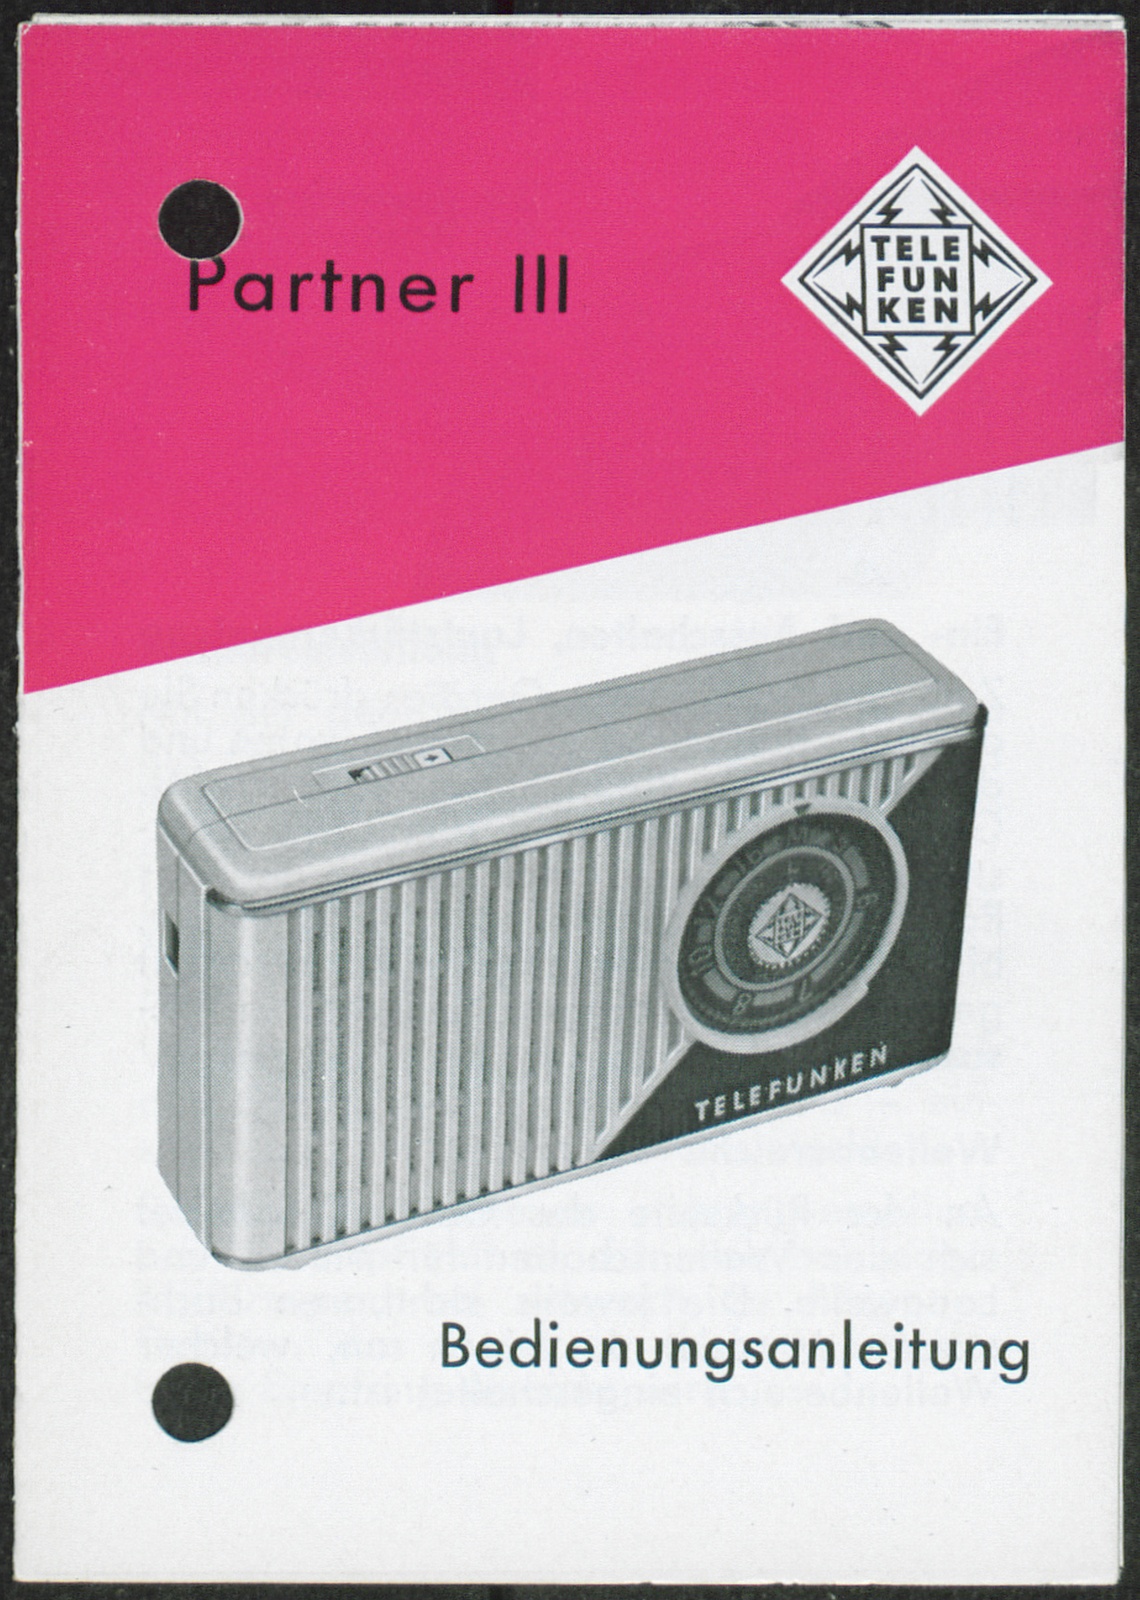 Bedienungsanleitung: Bedienungsanleitung Telefunken Partner III (Stiftung Deutsches Technikmuseum Berlin CC0)